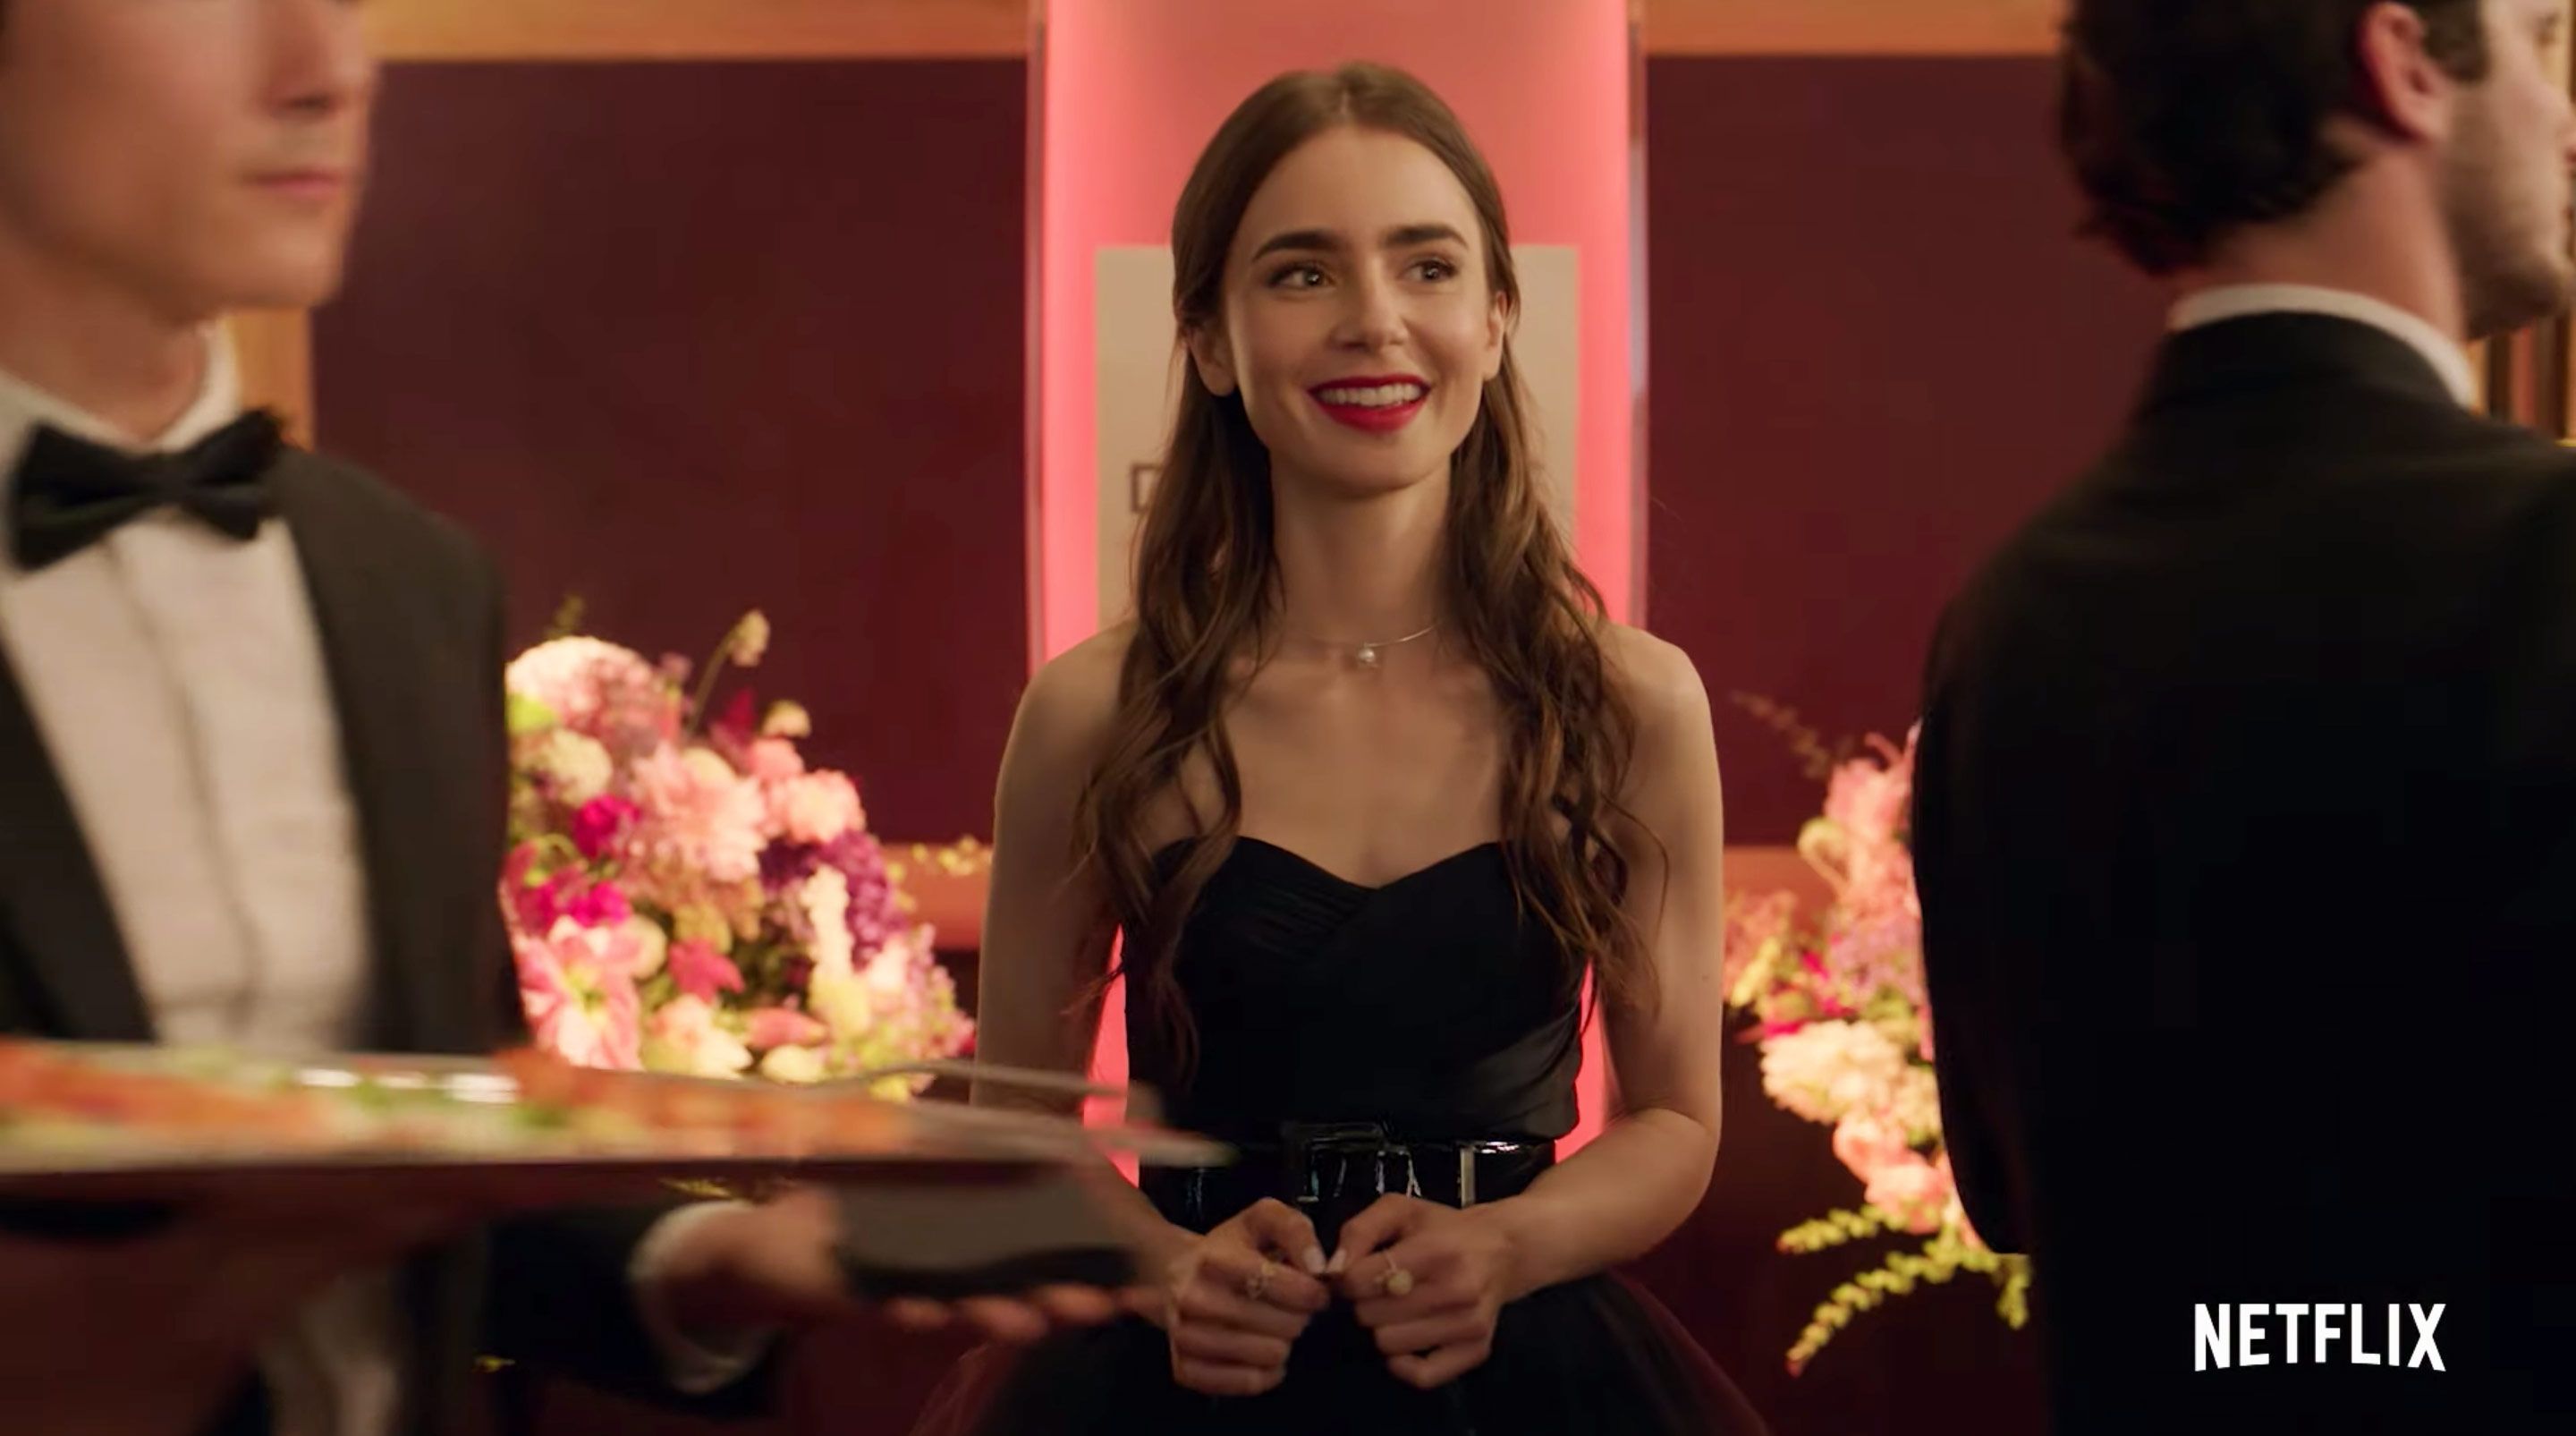 Netflix released an 'Emily in Paris' season 2 trailer